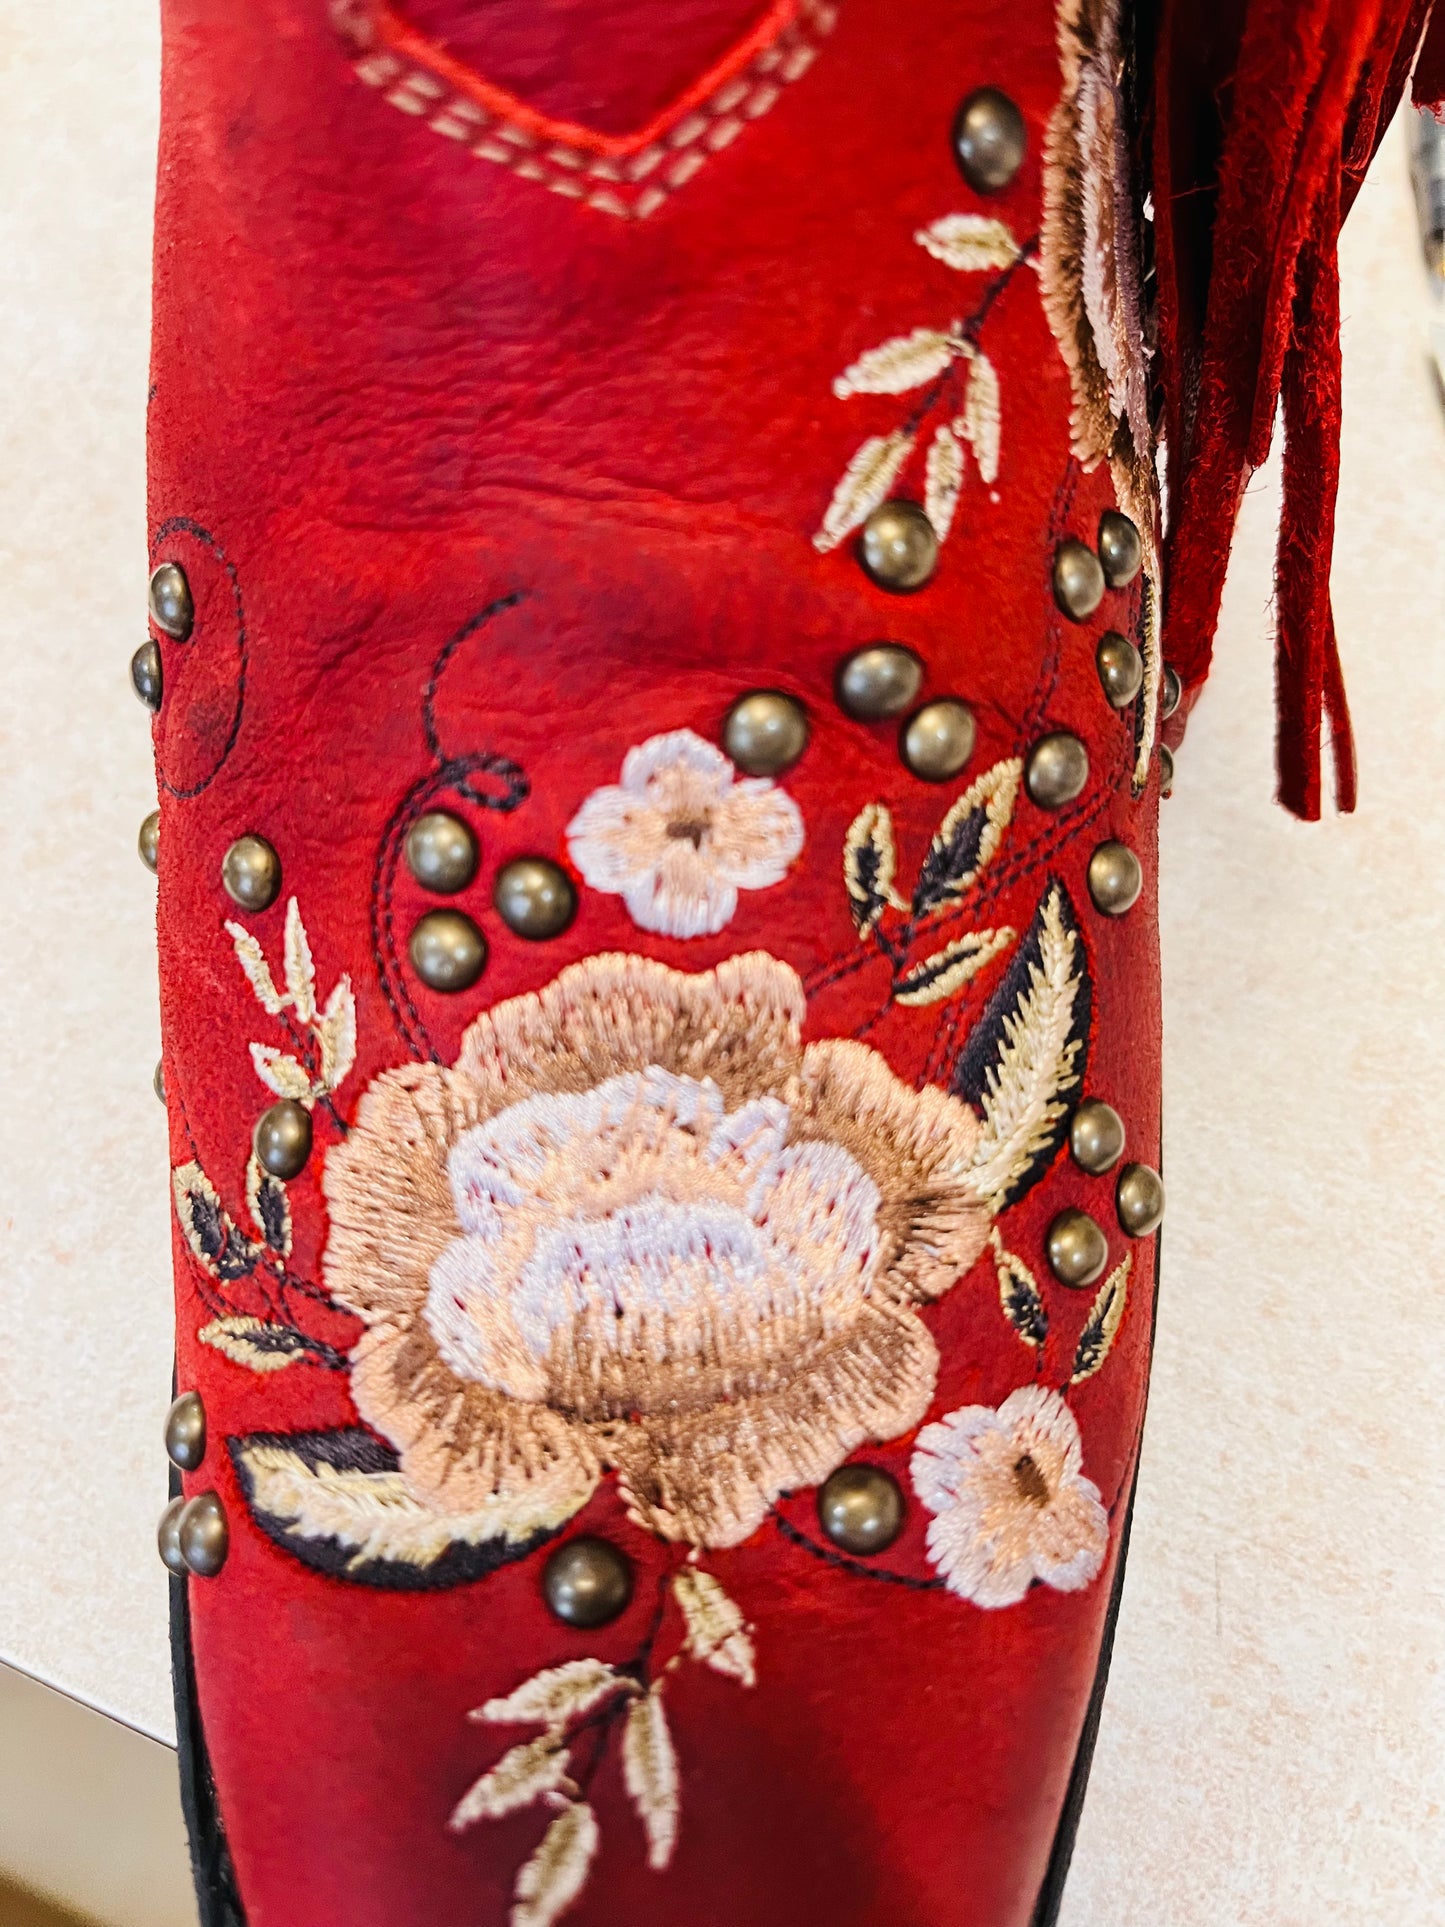 Junk Gypsy Wallflower Boot by Lane (Smoldering Ruby)